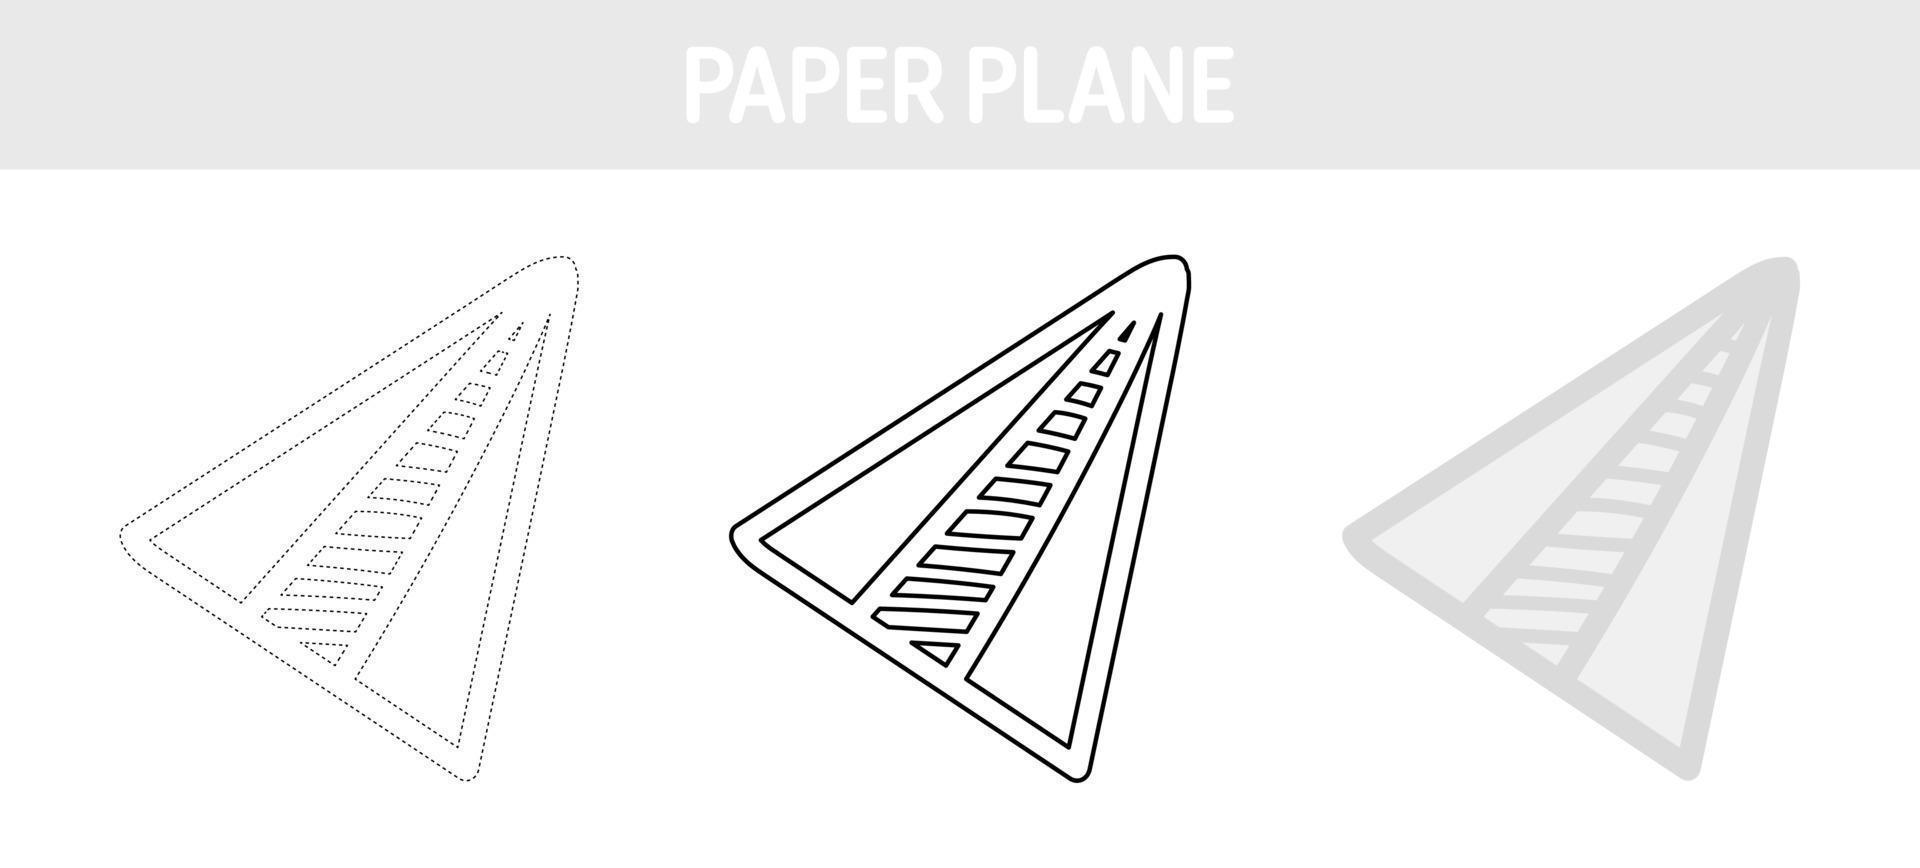 Arbeitsblatt zum Nachzeichnen und Ausmalen von Papierflugzeugen für Kinder vektor